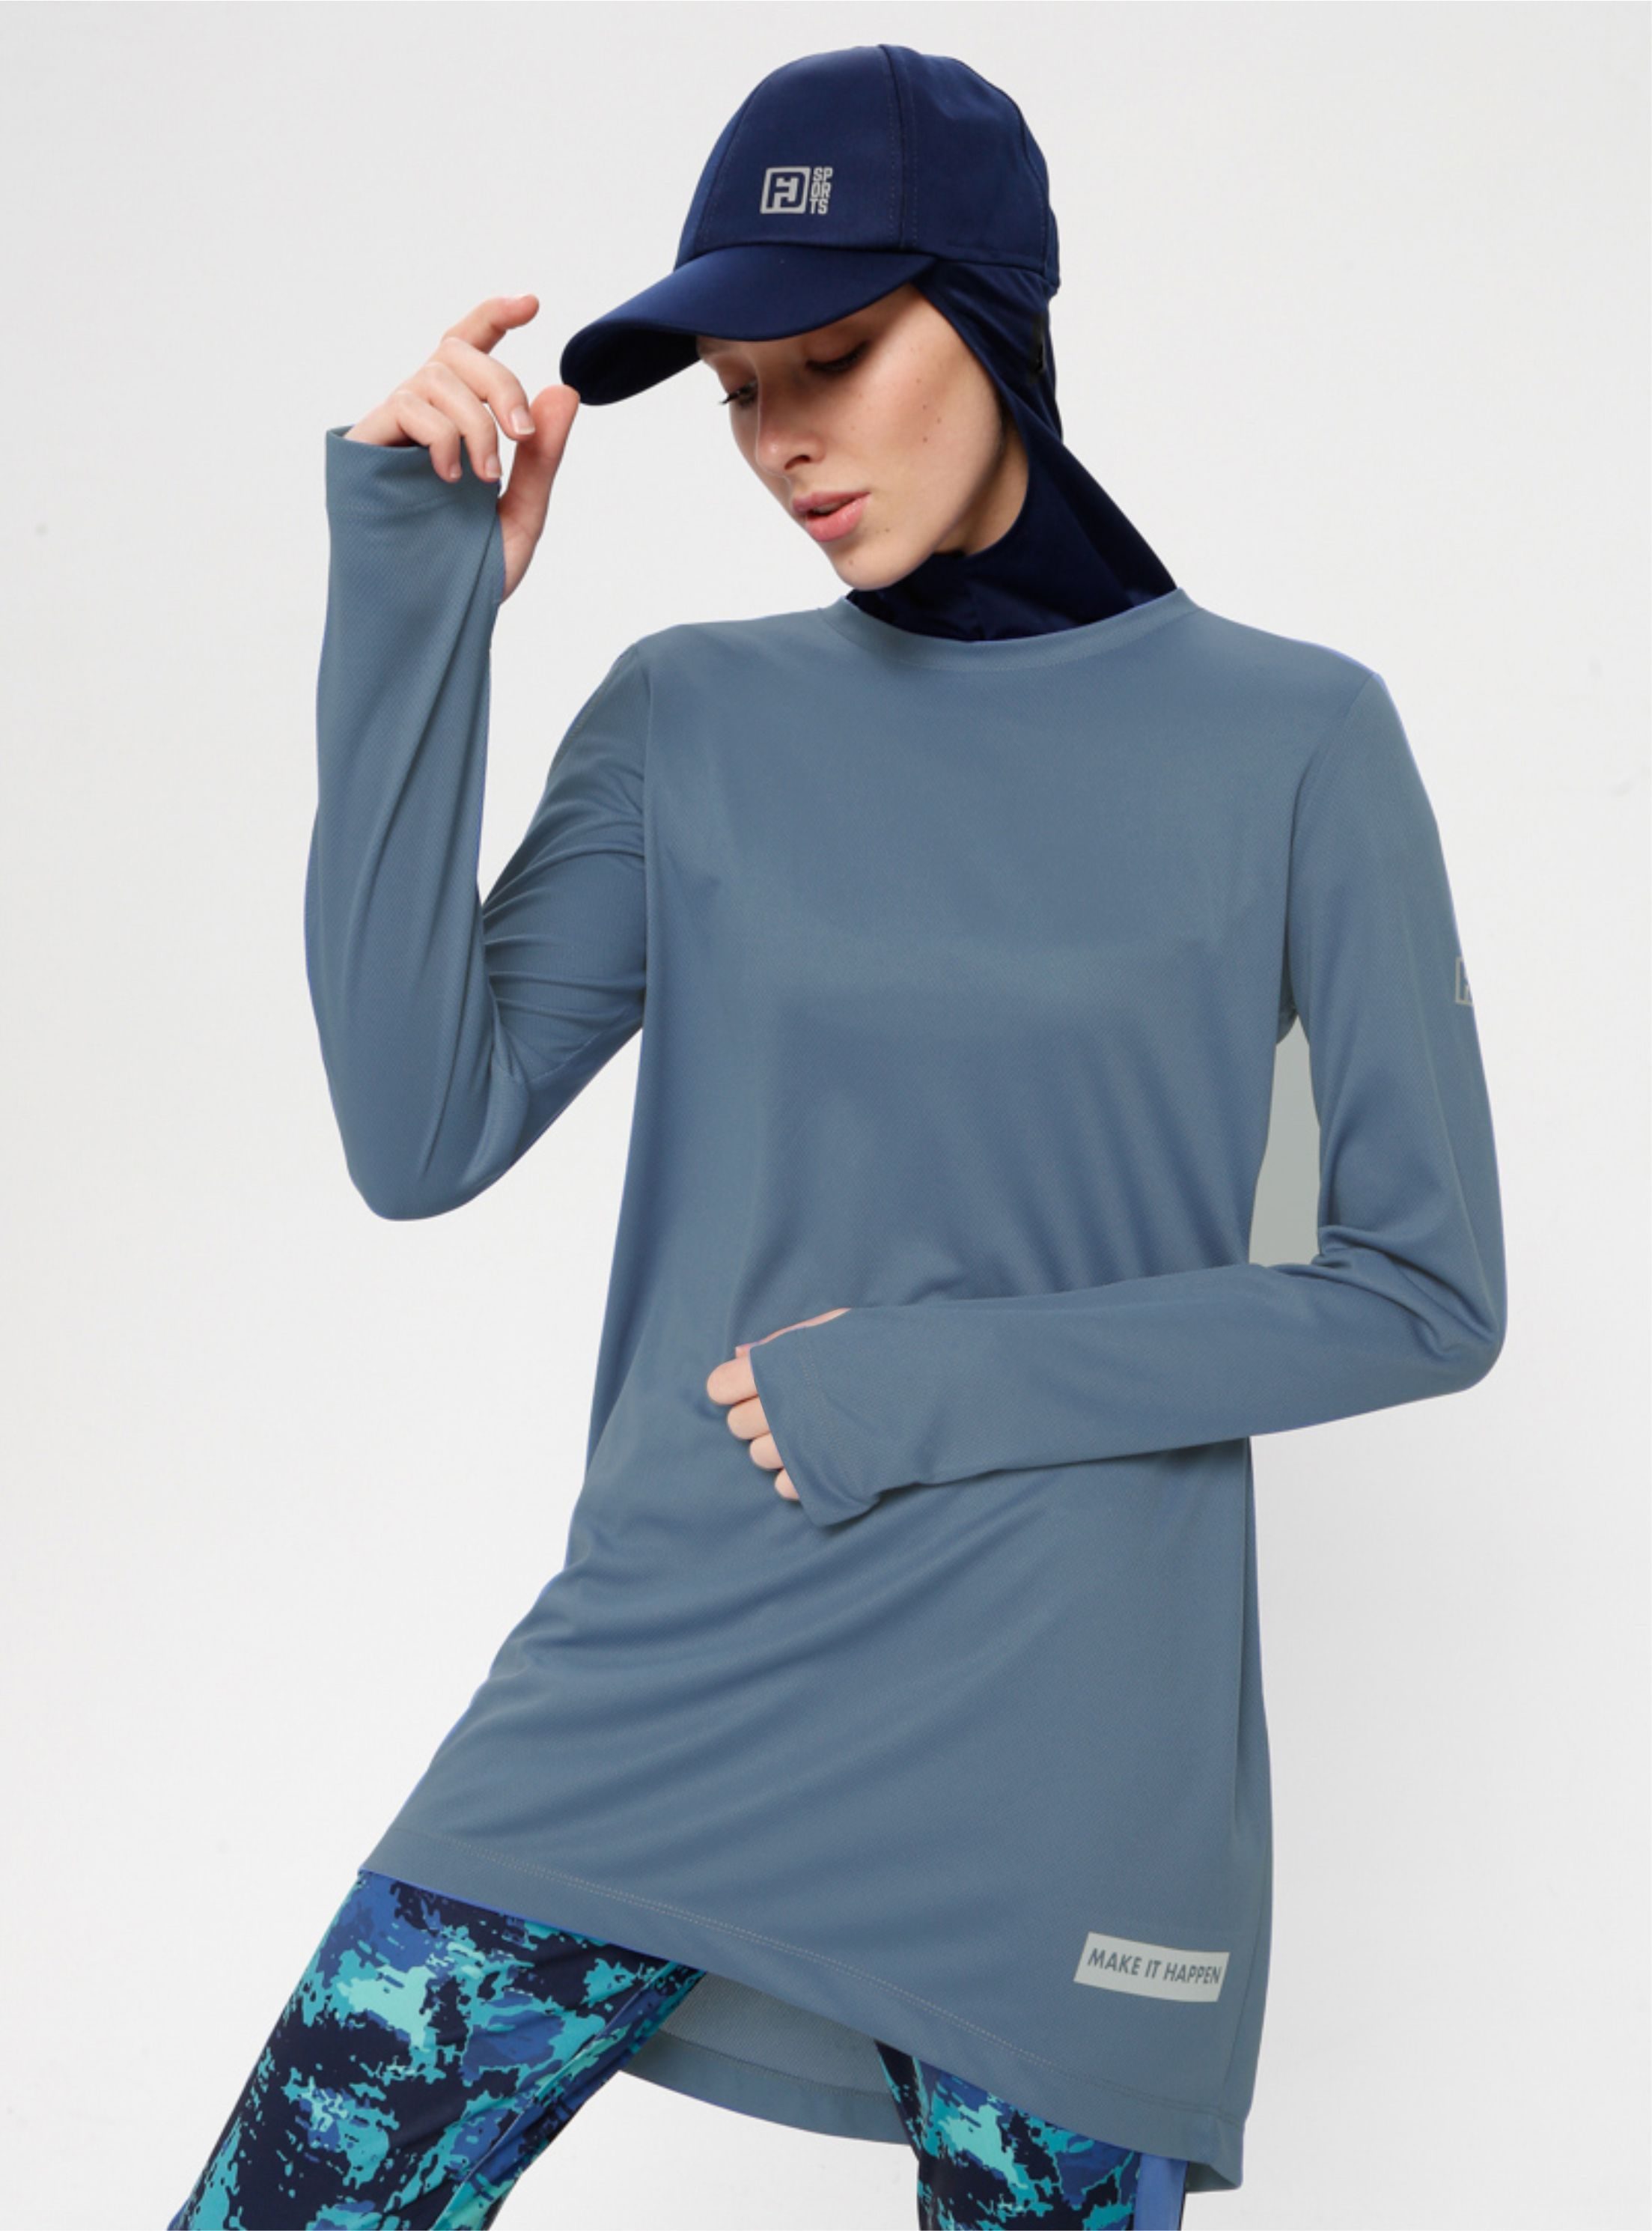 Sweat-sport bleu indigo pour femme voilée du style et de qualité pour vous.